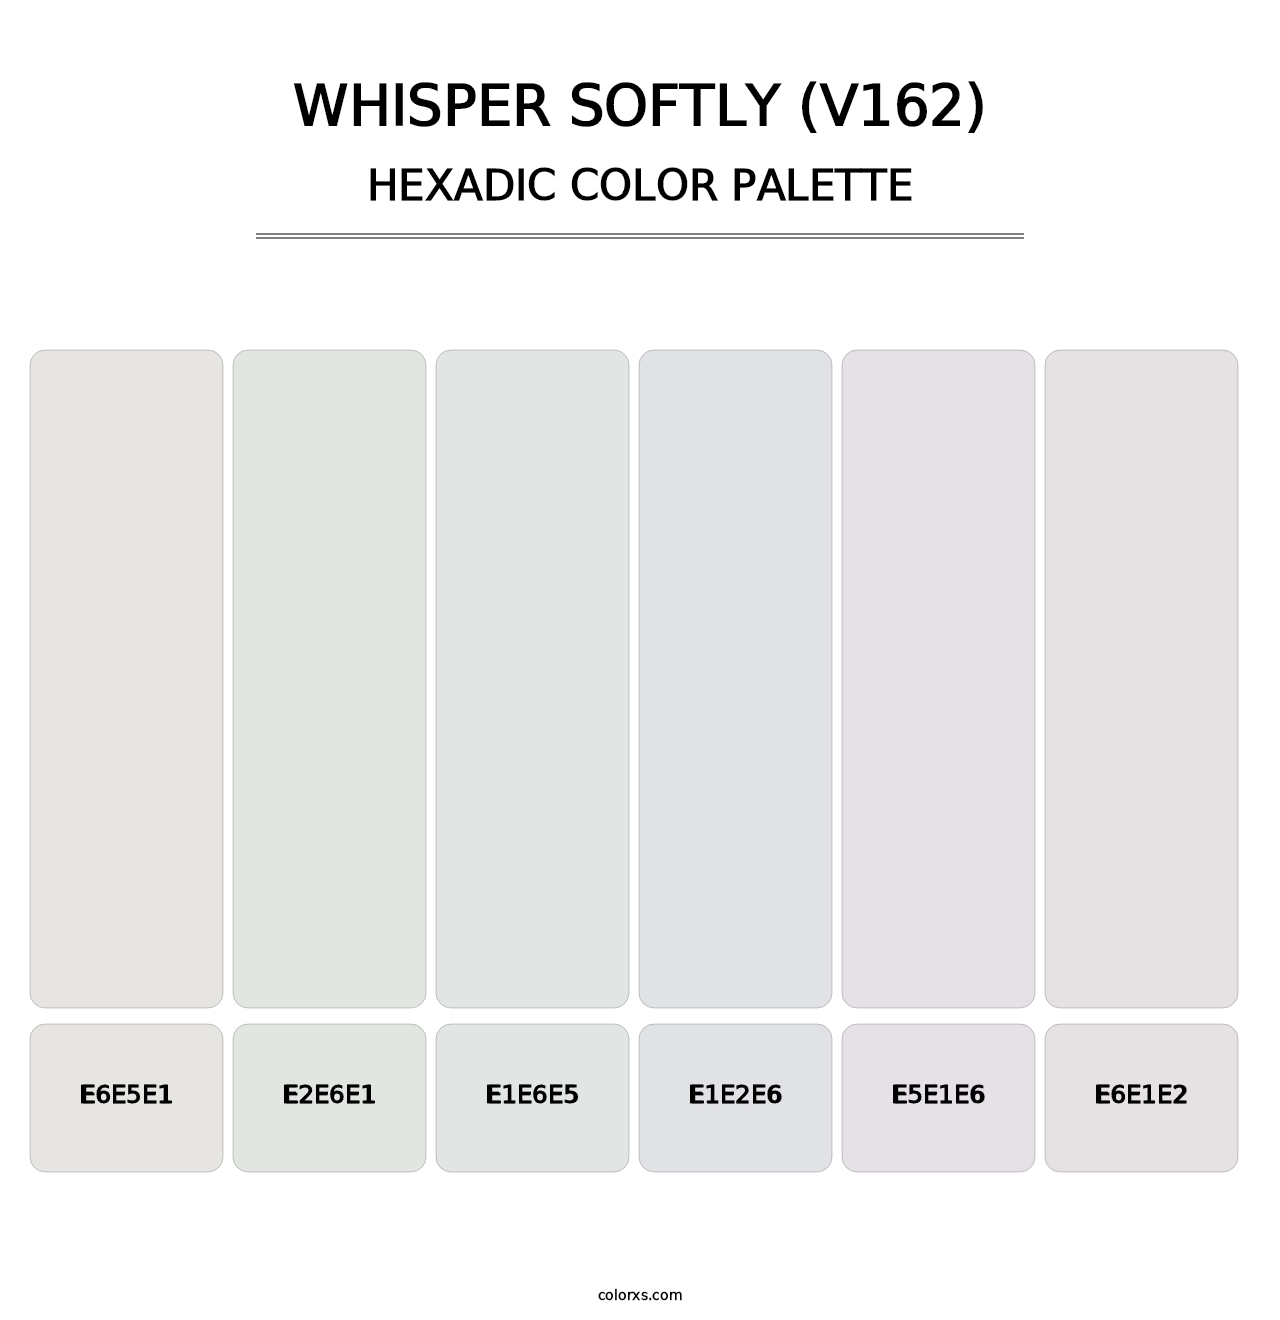 Whisper Softly (V162) - Hexadic Color Palette